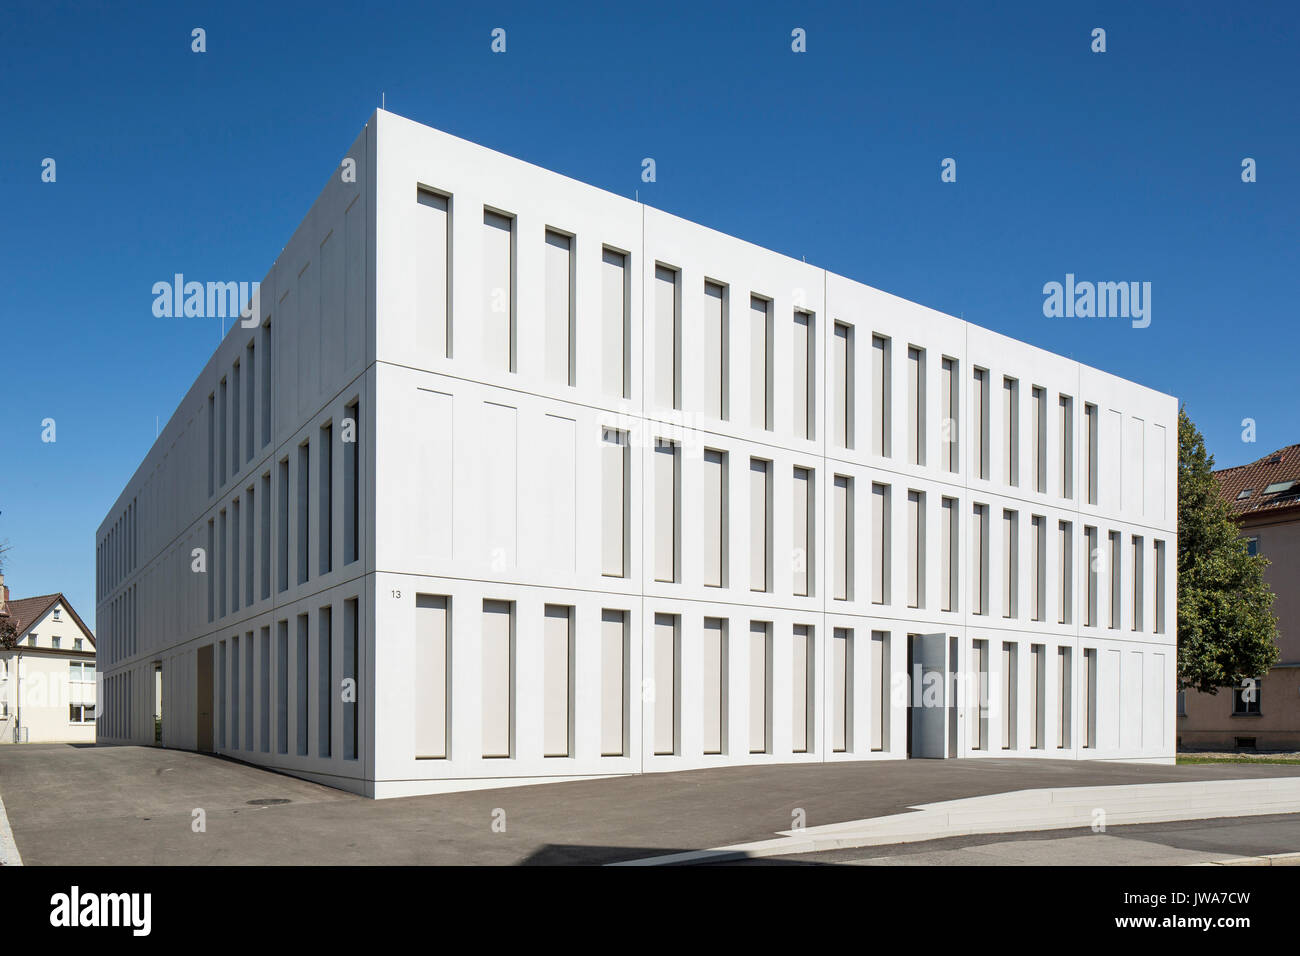 L'élévation de façade oblique entrée fermée avec stores. Finanzamt / Finances Bureau Biberach, Biberach, Allemagne. Architecte : Hartwig schneider architek Banque D'Images